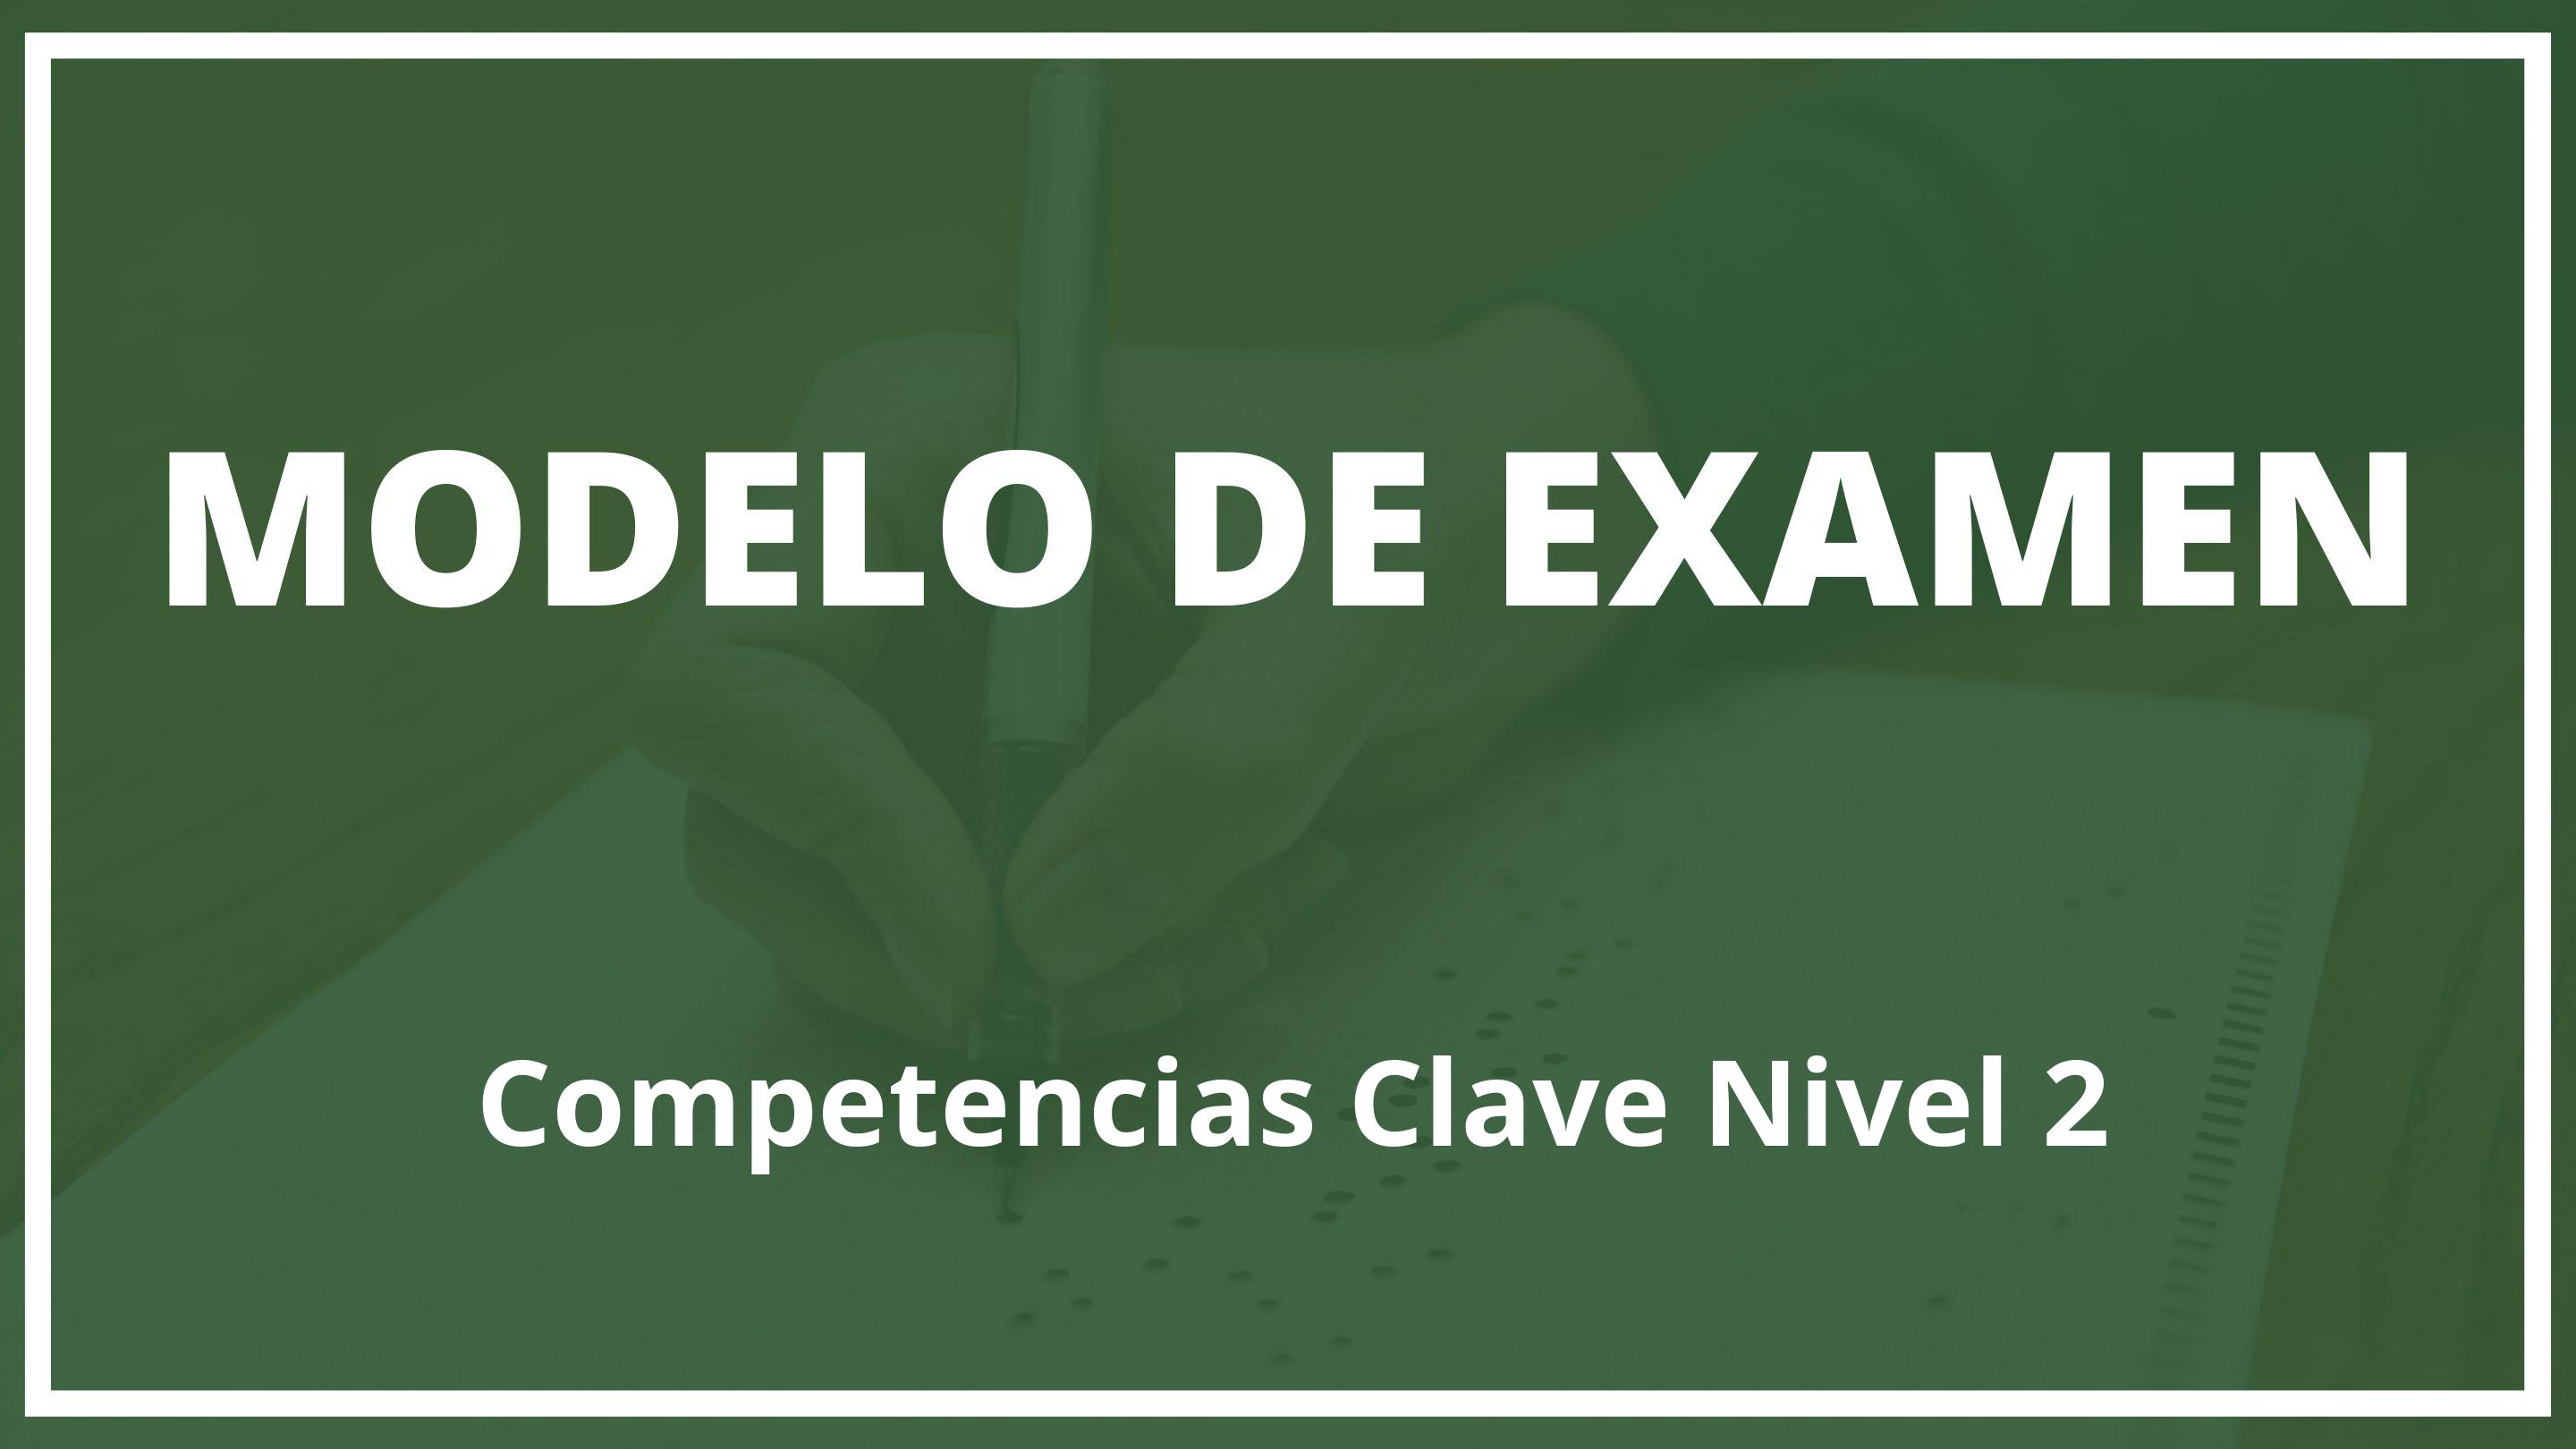 Examen Competencias Clave Nivel 2